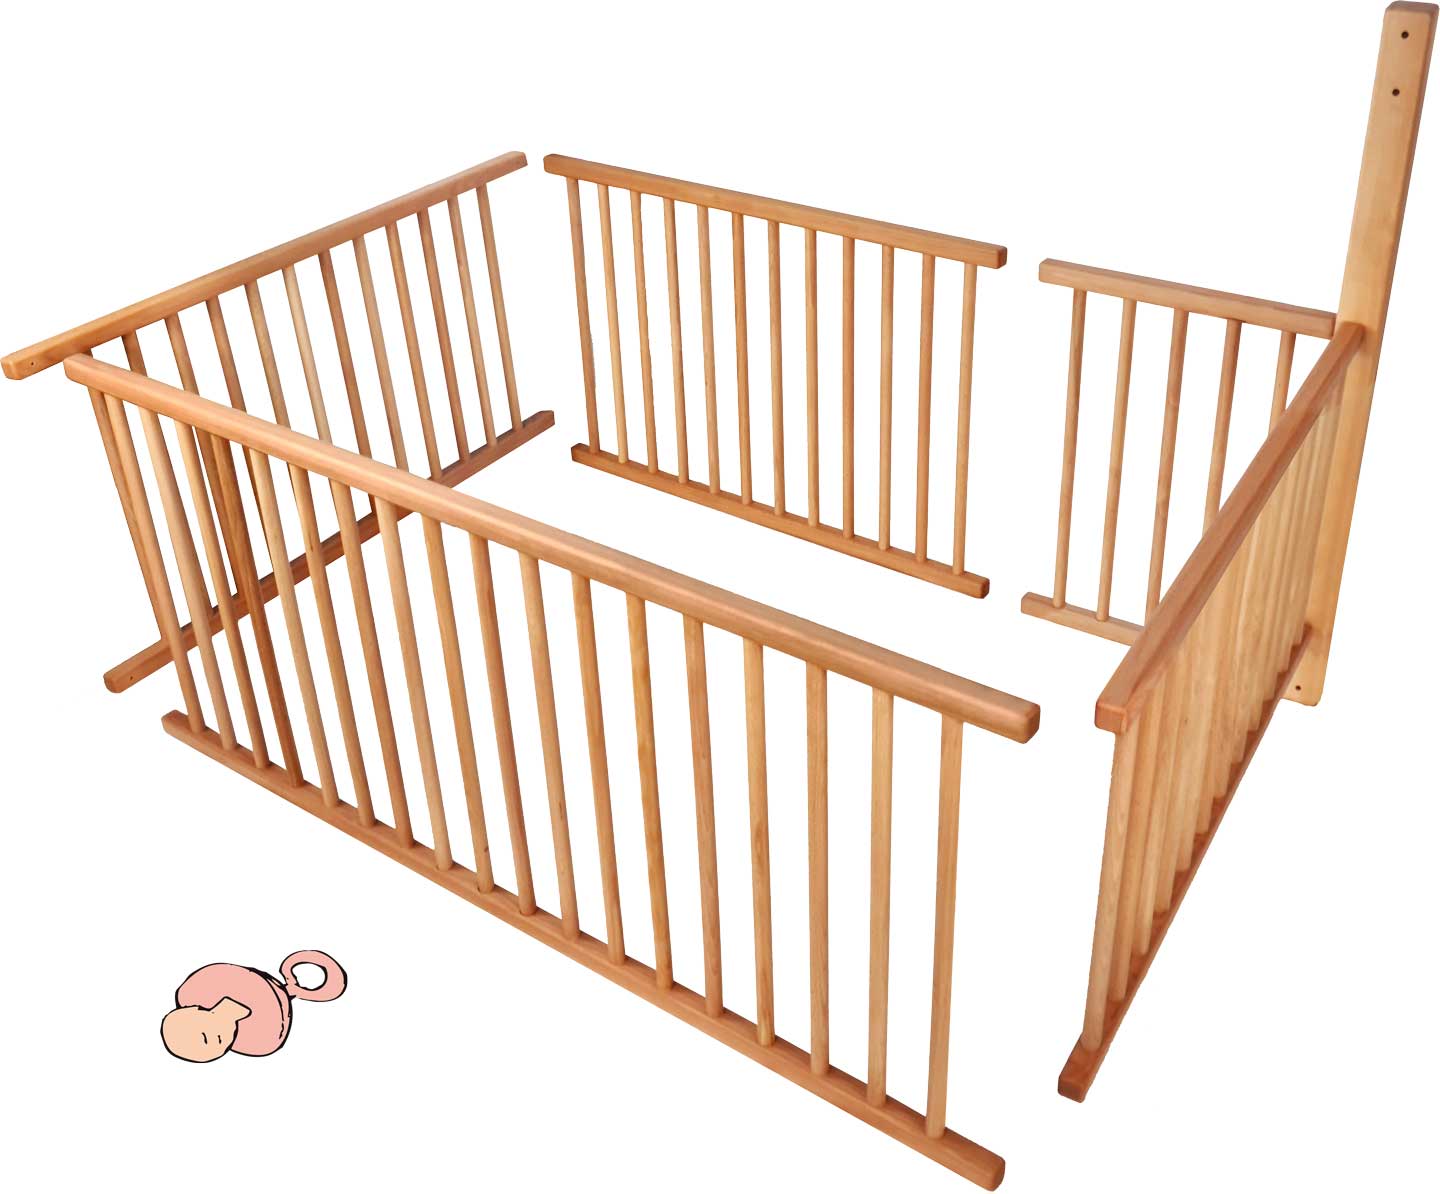 Babyhek set voor stapelbed met standaard voeten (196 cm) en ladderstand A voor ¾ van het ligvlak incl. extra benodigde balk**